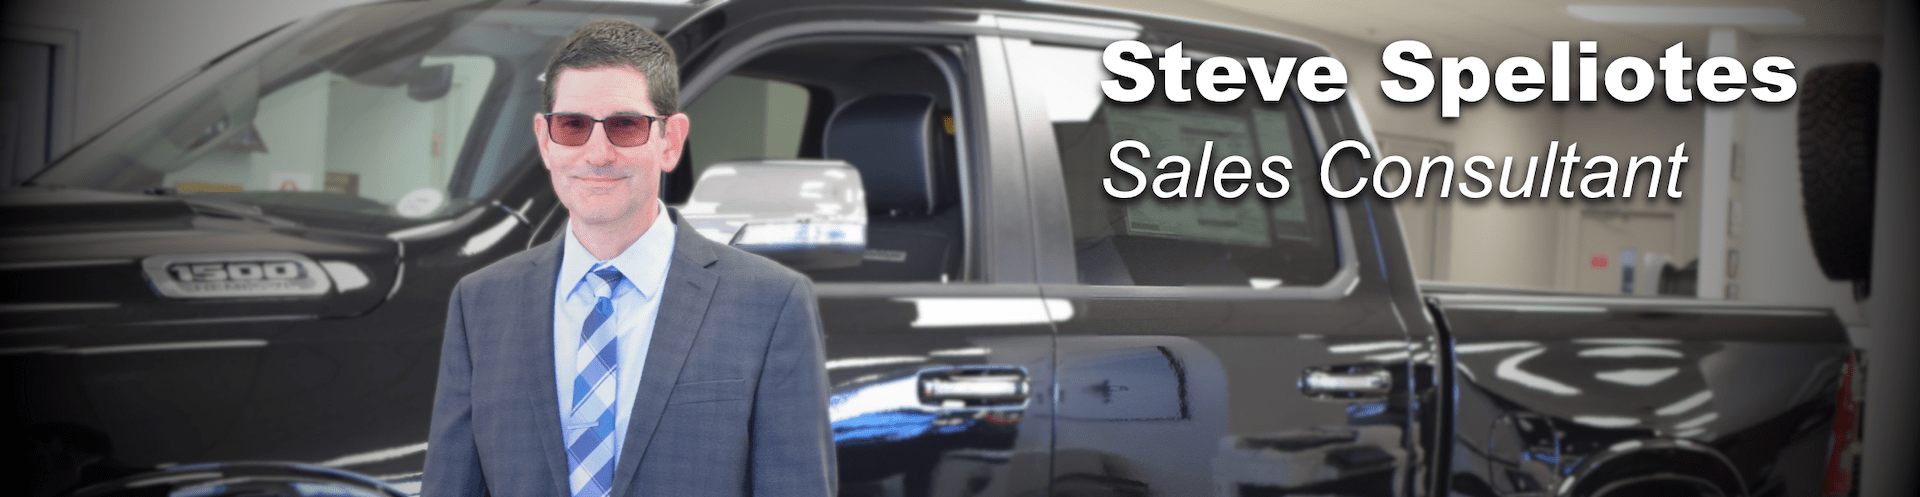 steve speliotes sales consultant prestige chrysler dodge jeep ram